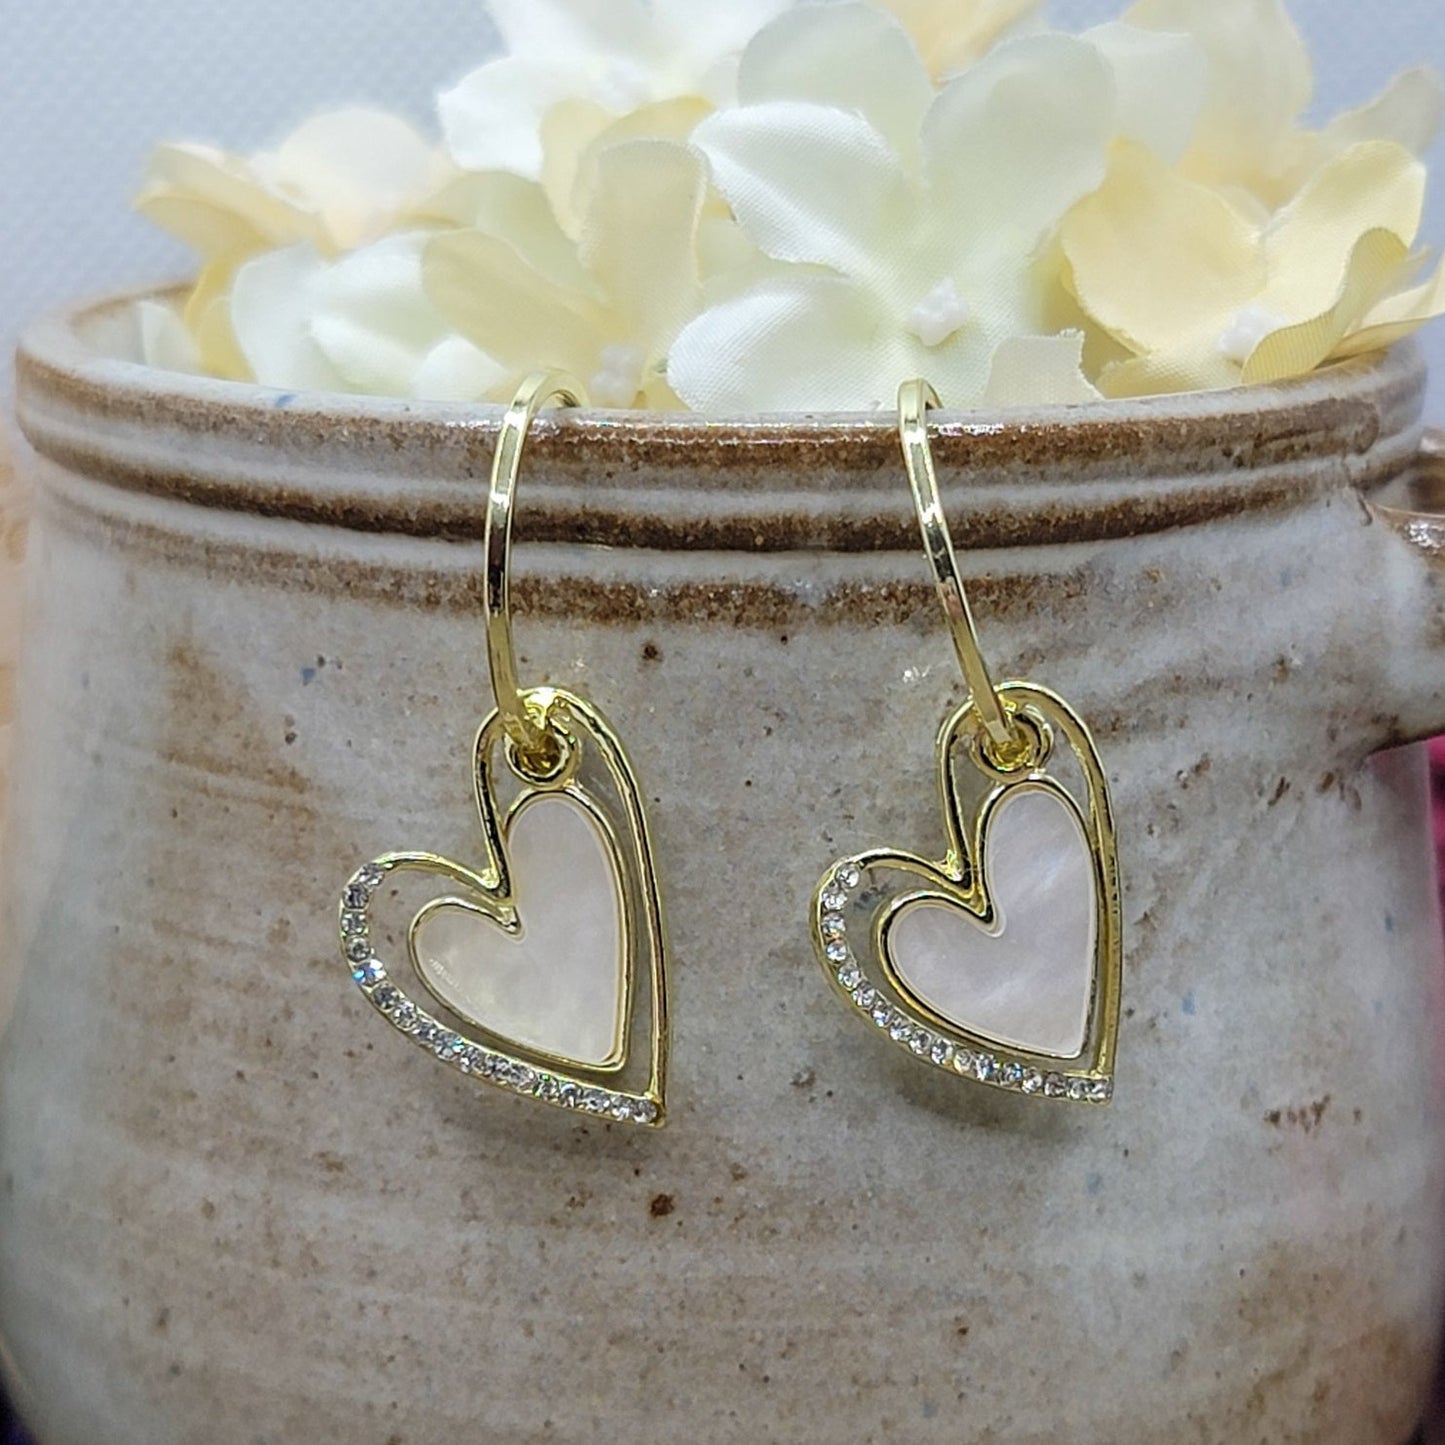  Enamel Heart Hoop Earrings, Nicki Lynn Jewelry 